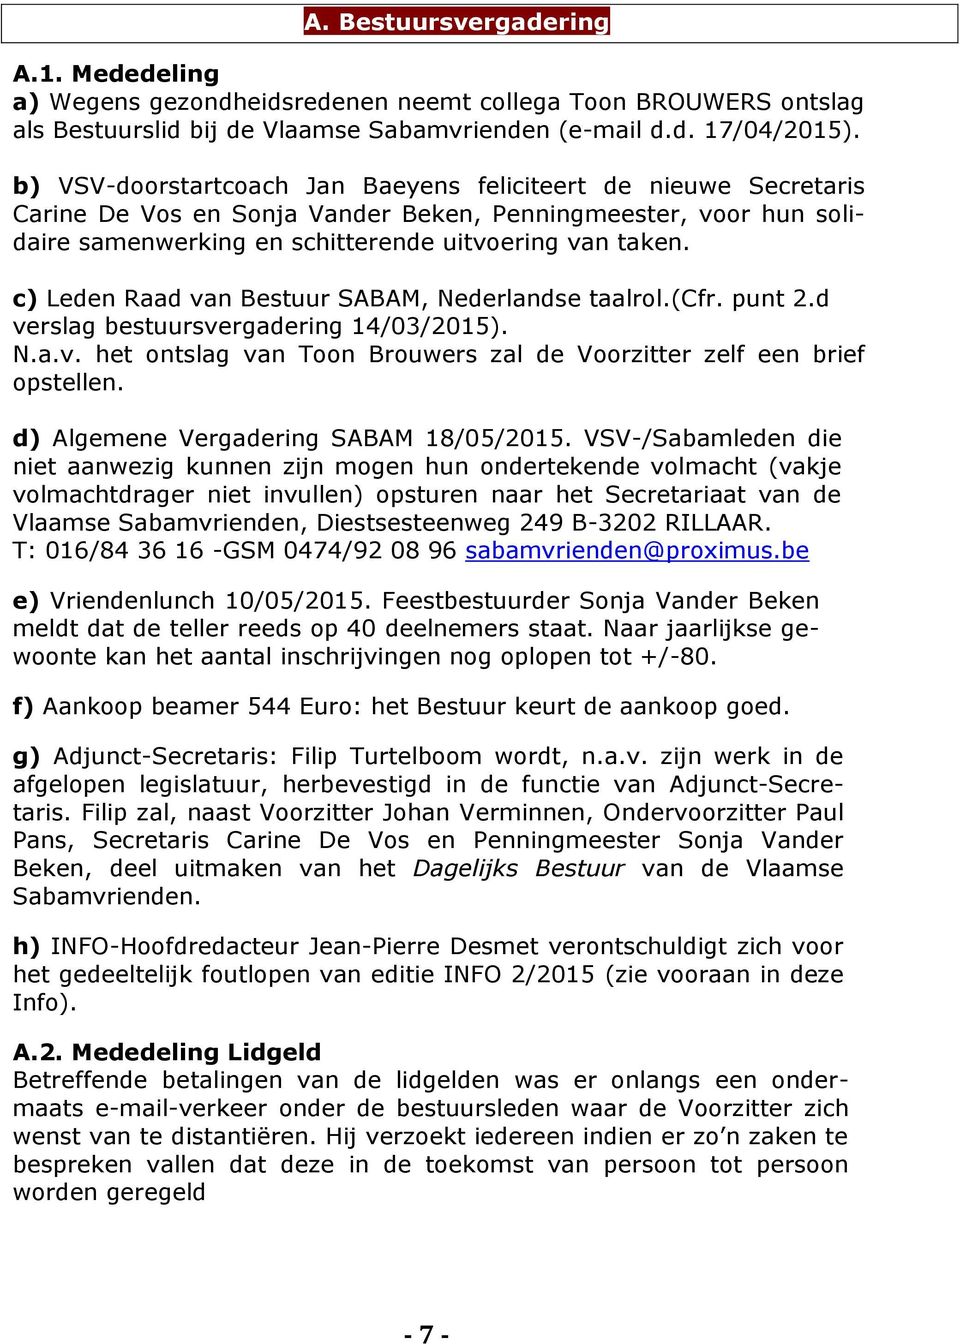 c) Leden Raad van Bestuur SABAM, Nederlandse taalrol.(cfr. punt 2.d verslag bestuursvergadering 14/03/2015). N.a.v. het ontslag van Toon Brouwers zal de Voorzitter zelf een brief opstellen.